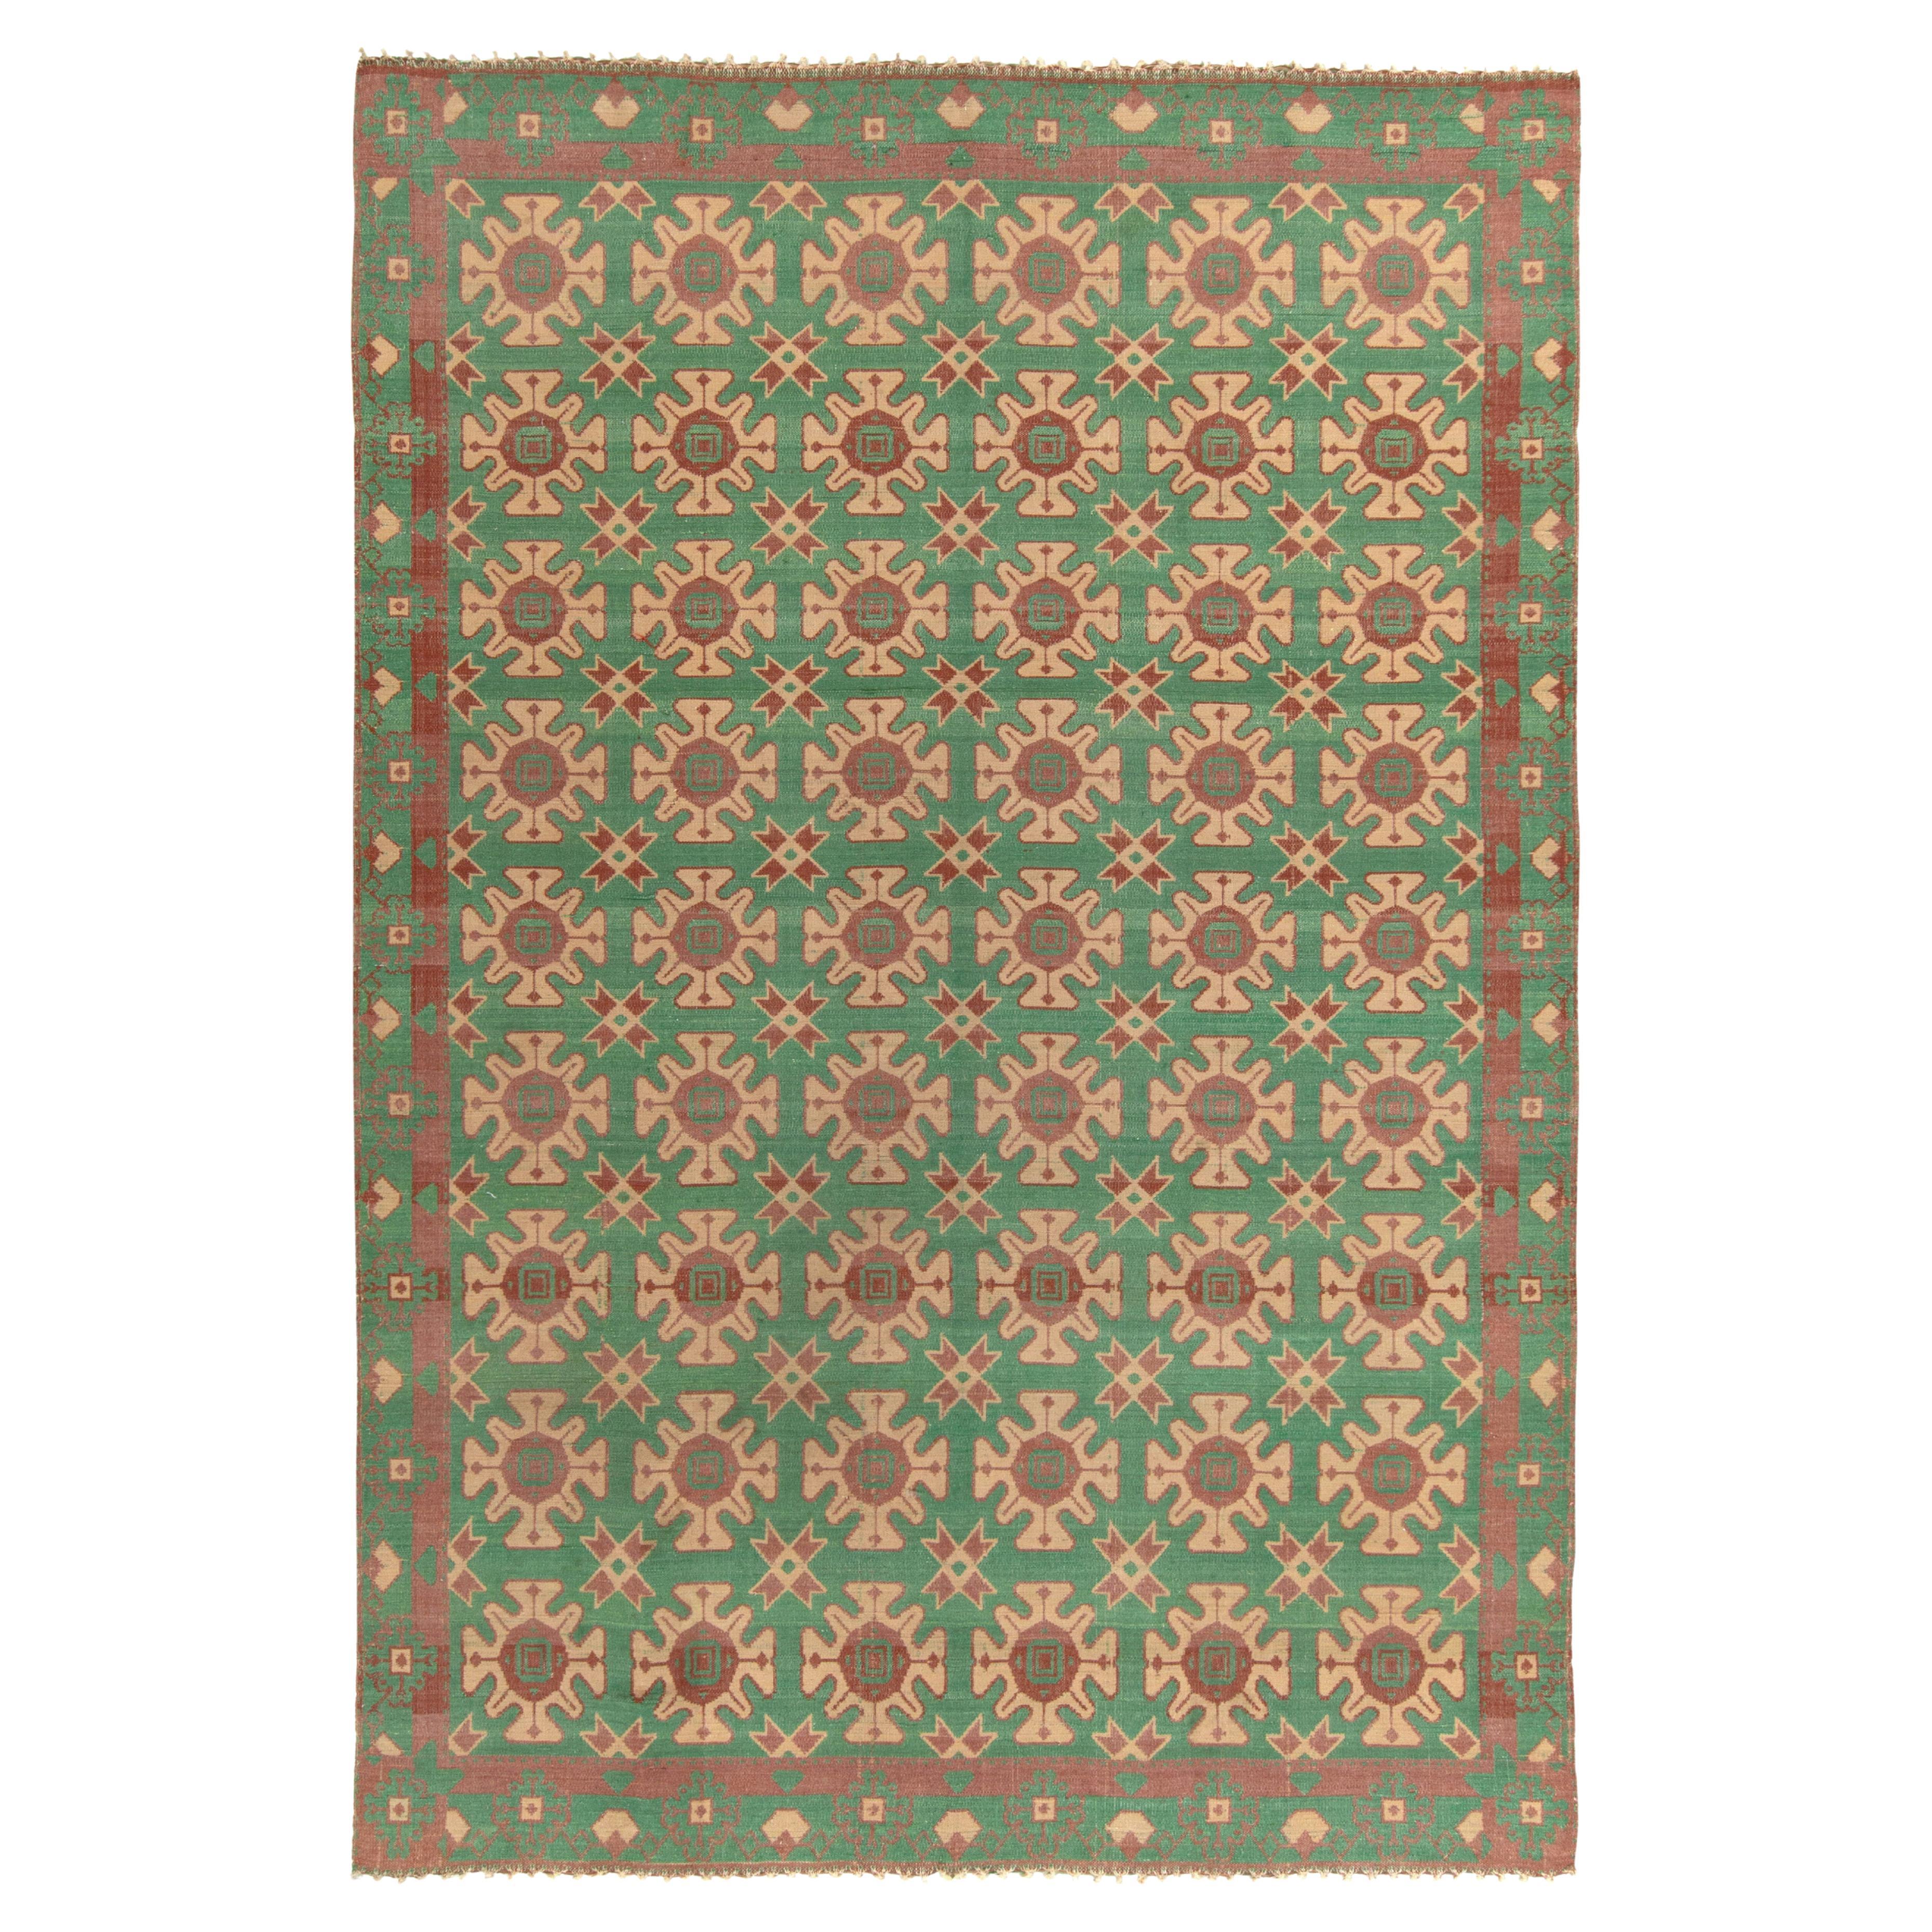 Handgewebter handgewebter Vintage-Kelimteppich in Beige, Grün mit geometrischem Muster von Teppich & Kelim